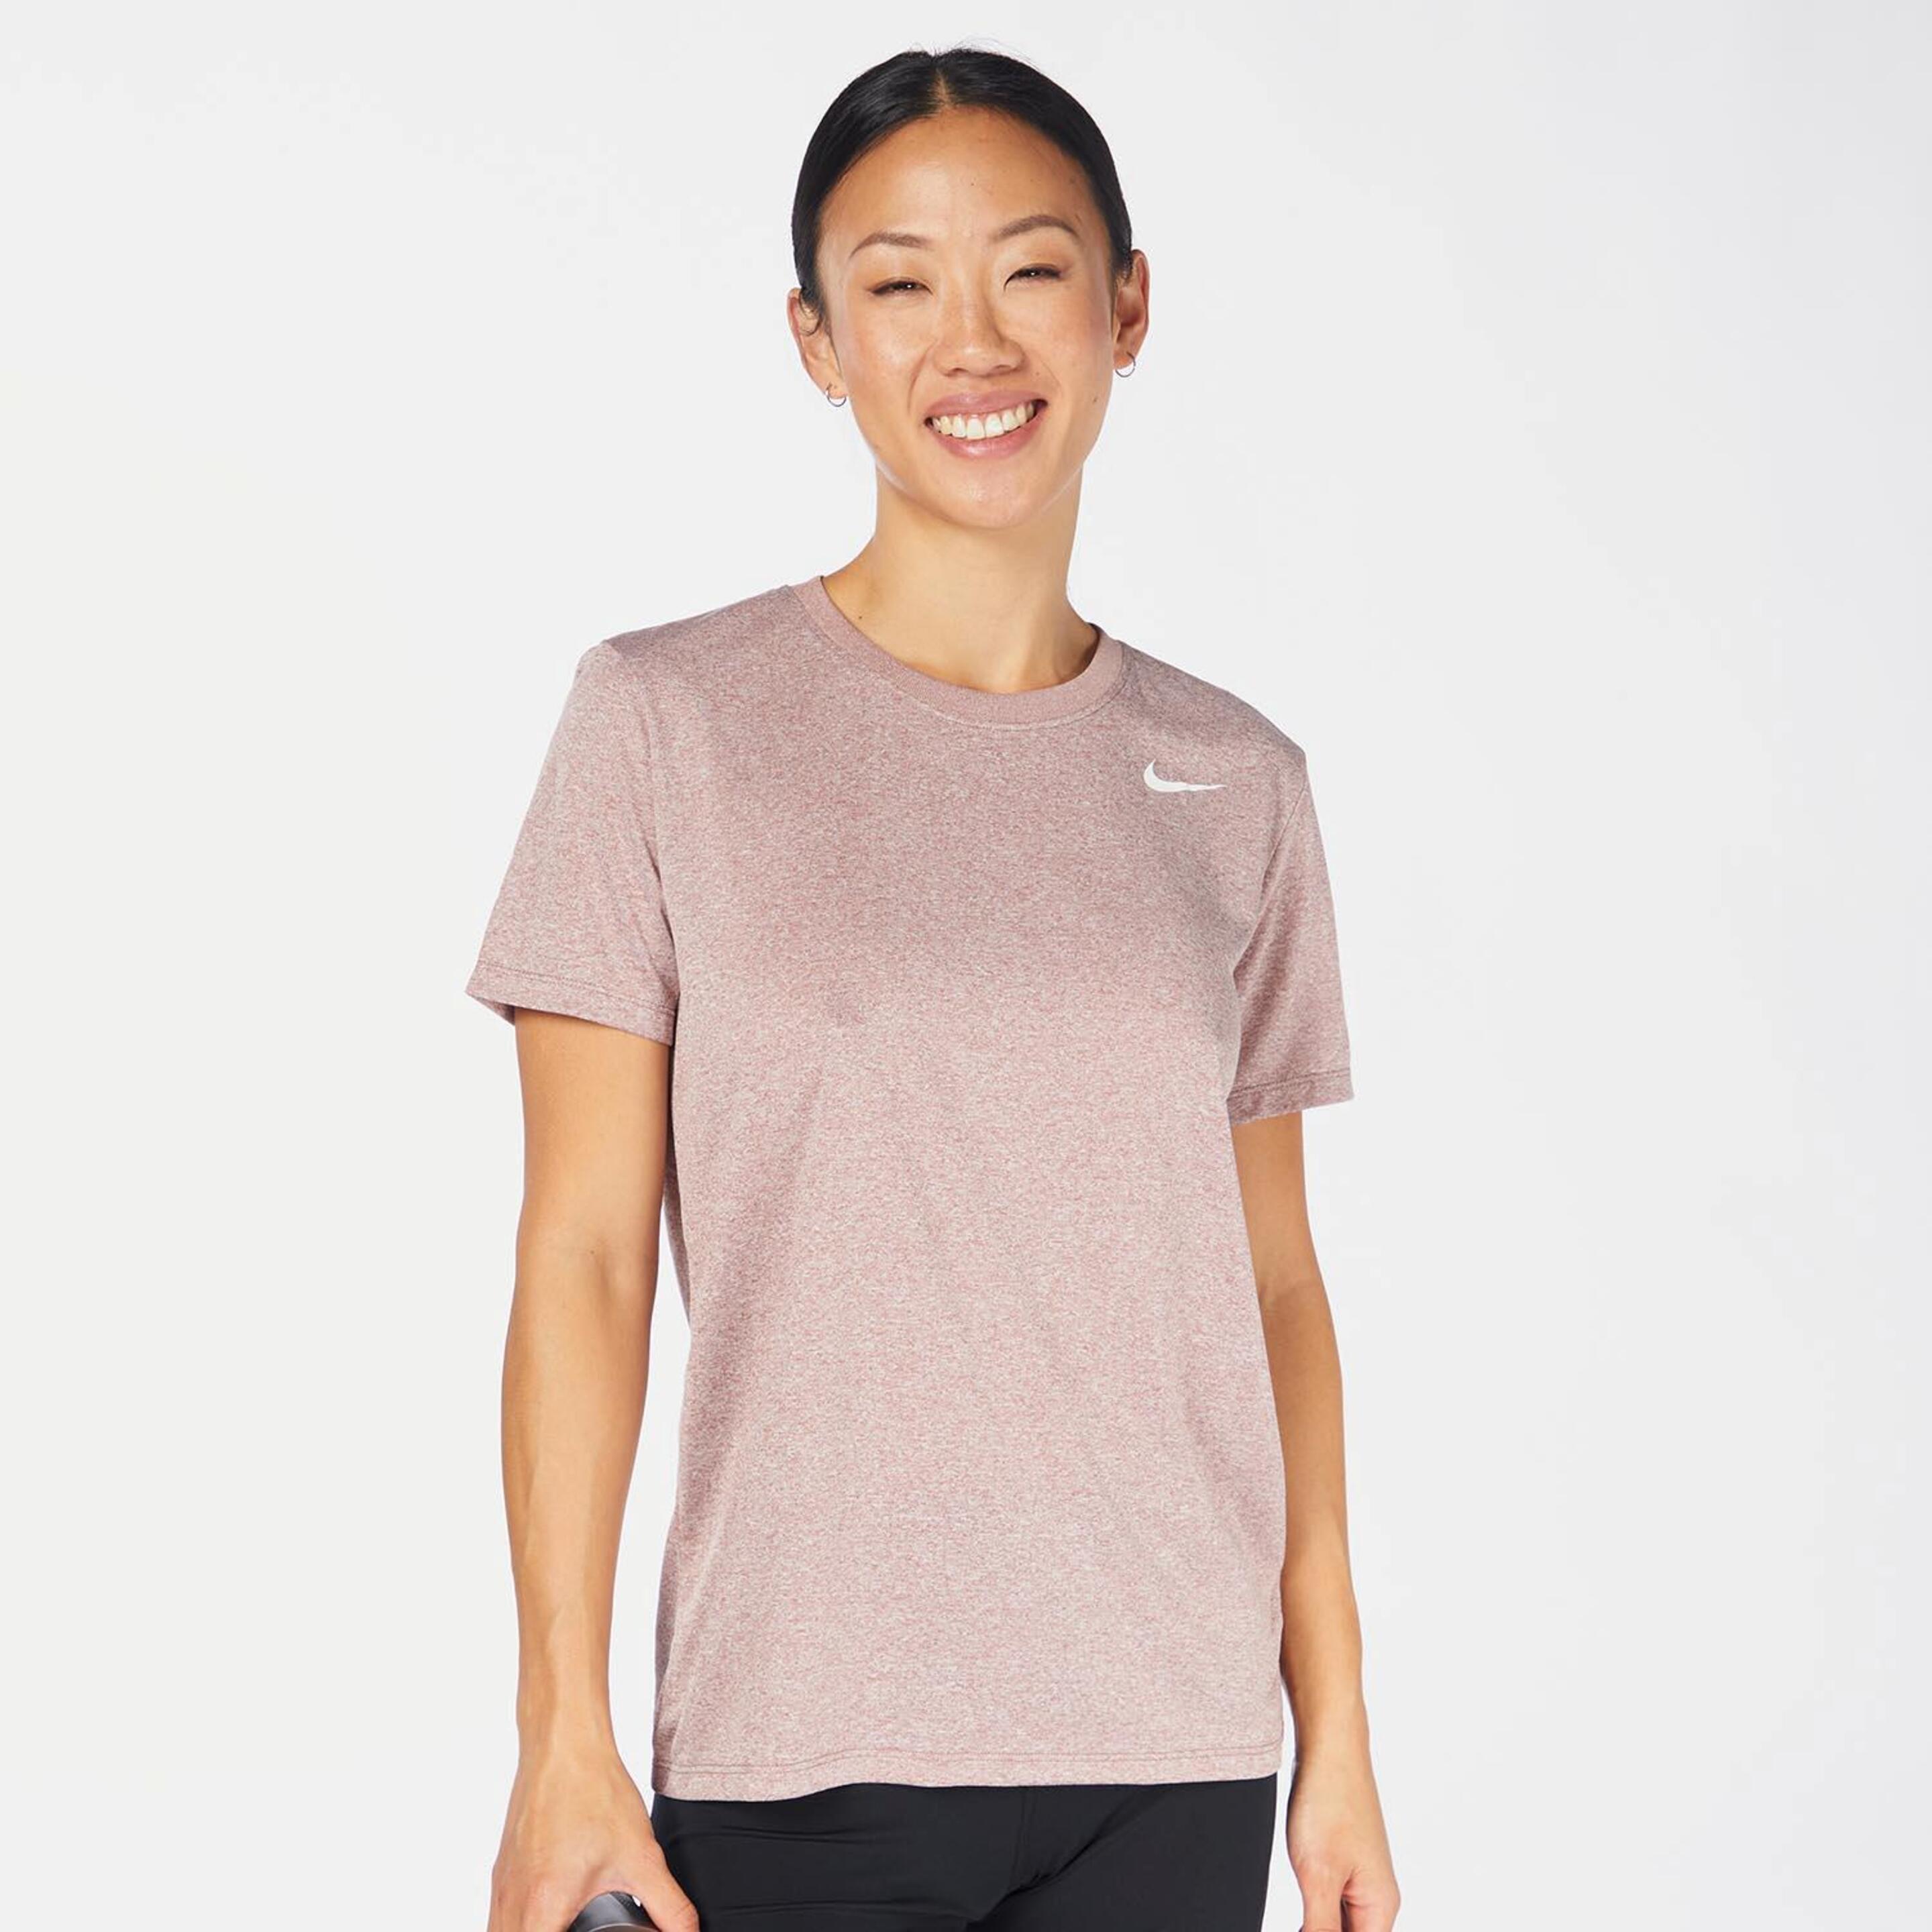 Camiseta Nike - morado - Camiseta Running Mujer